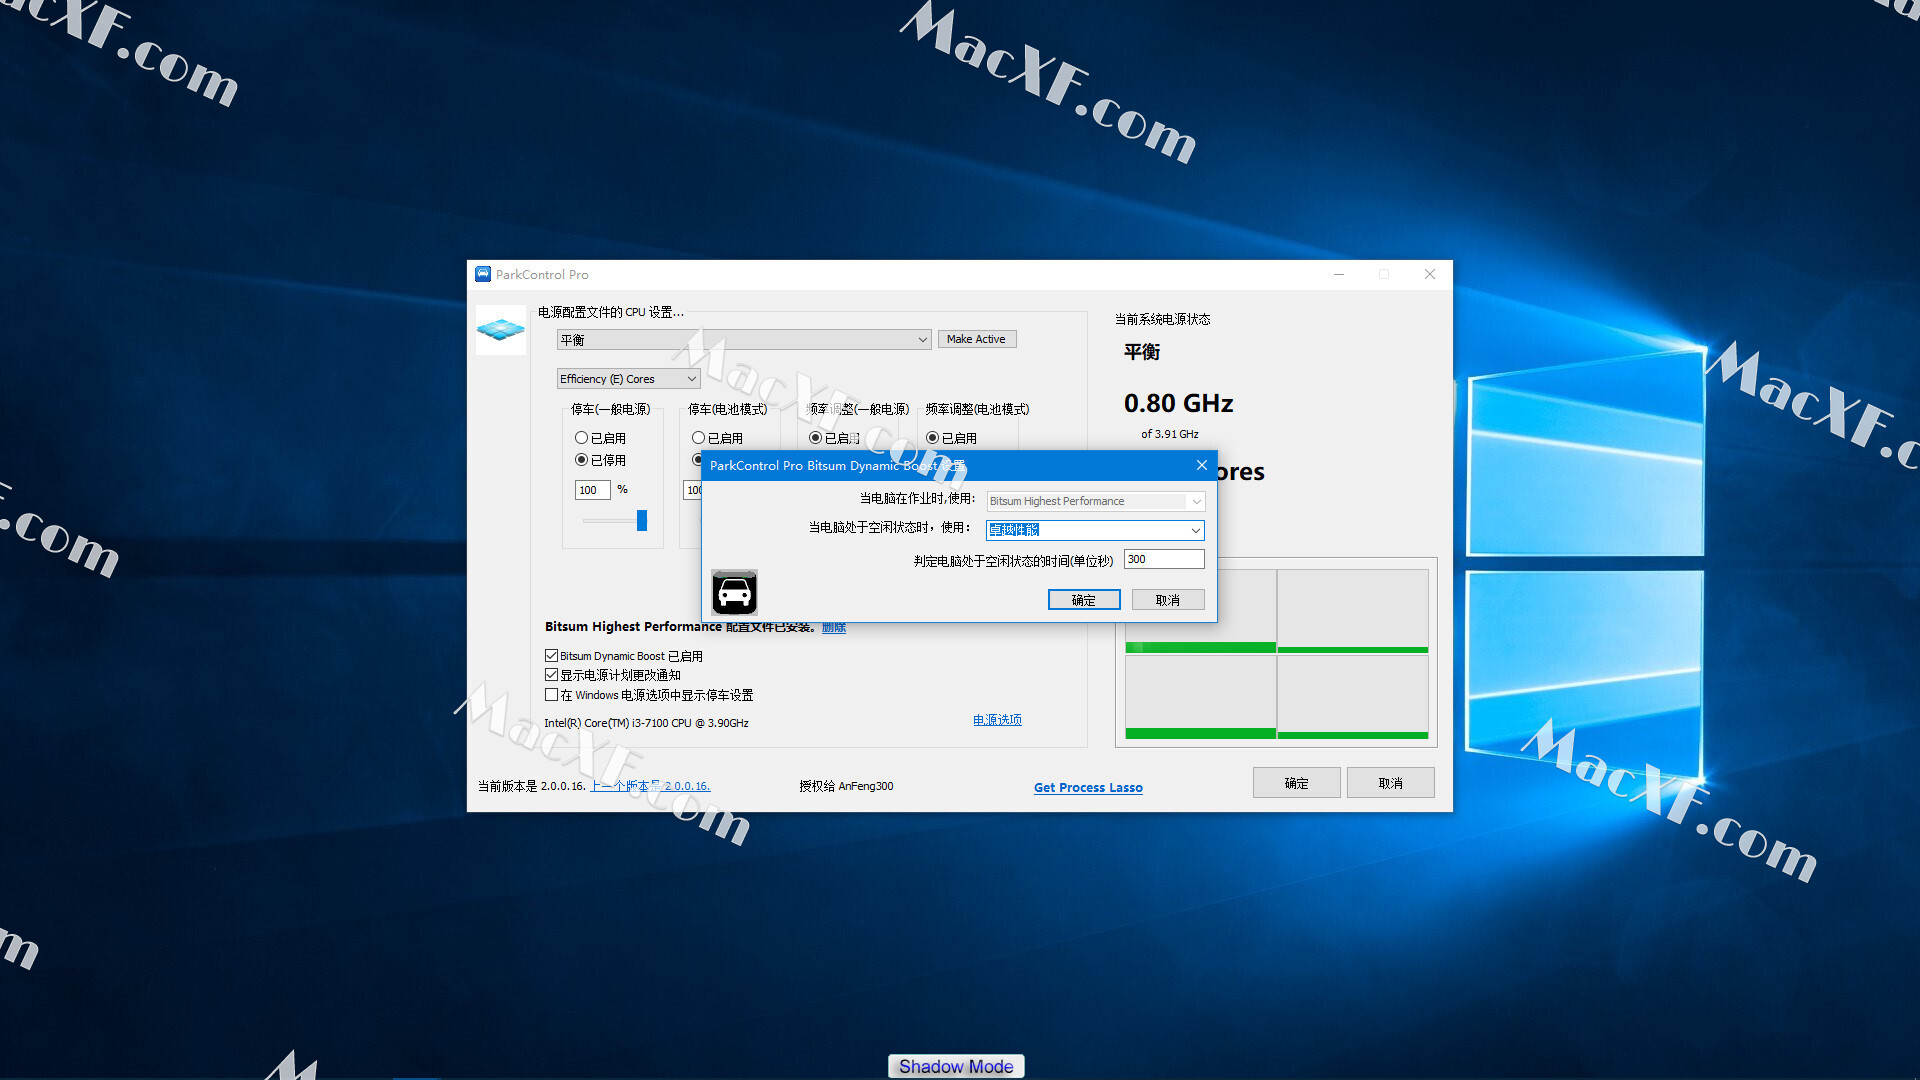 Bitsum ParkControl Pro 4.2.1.10 download